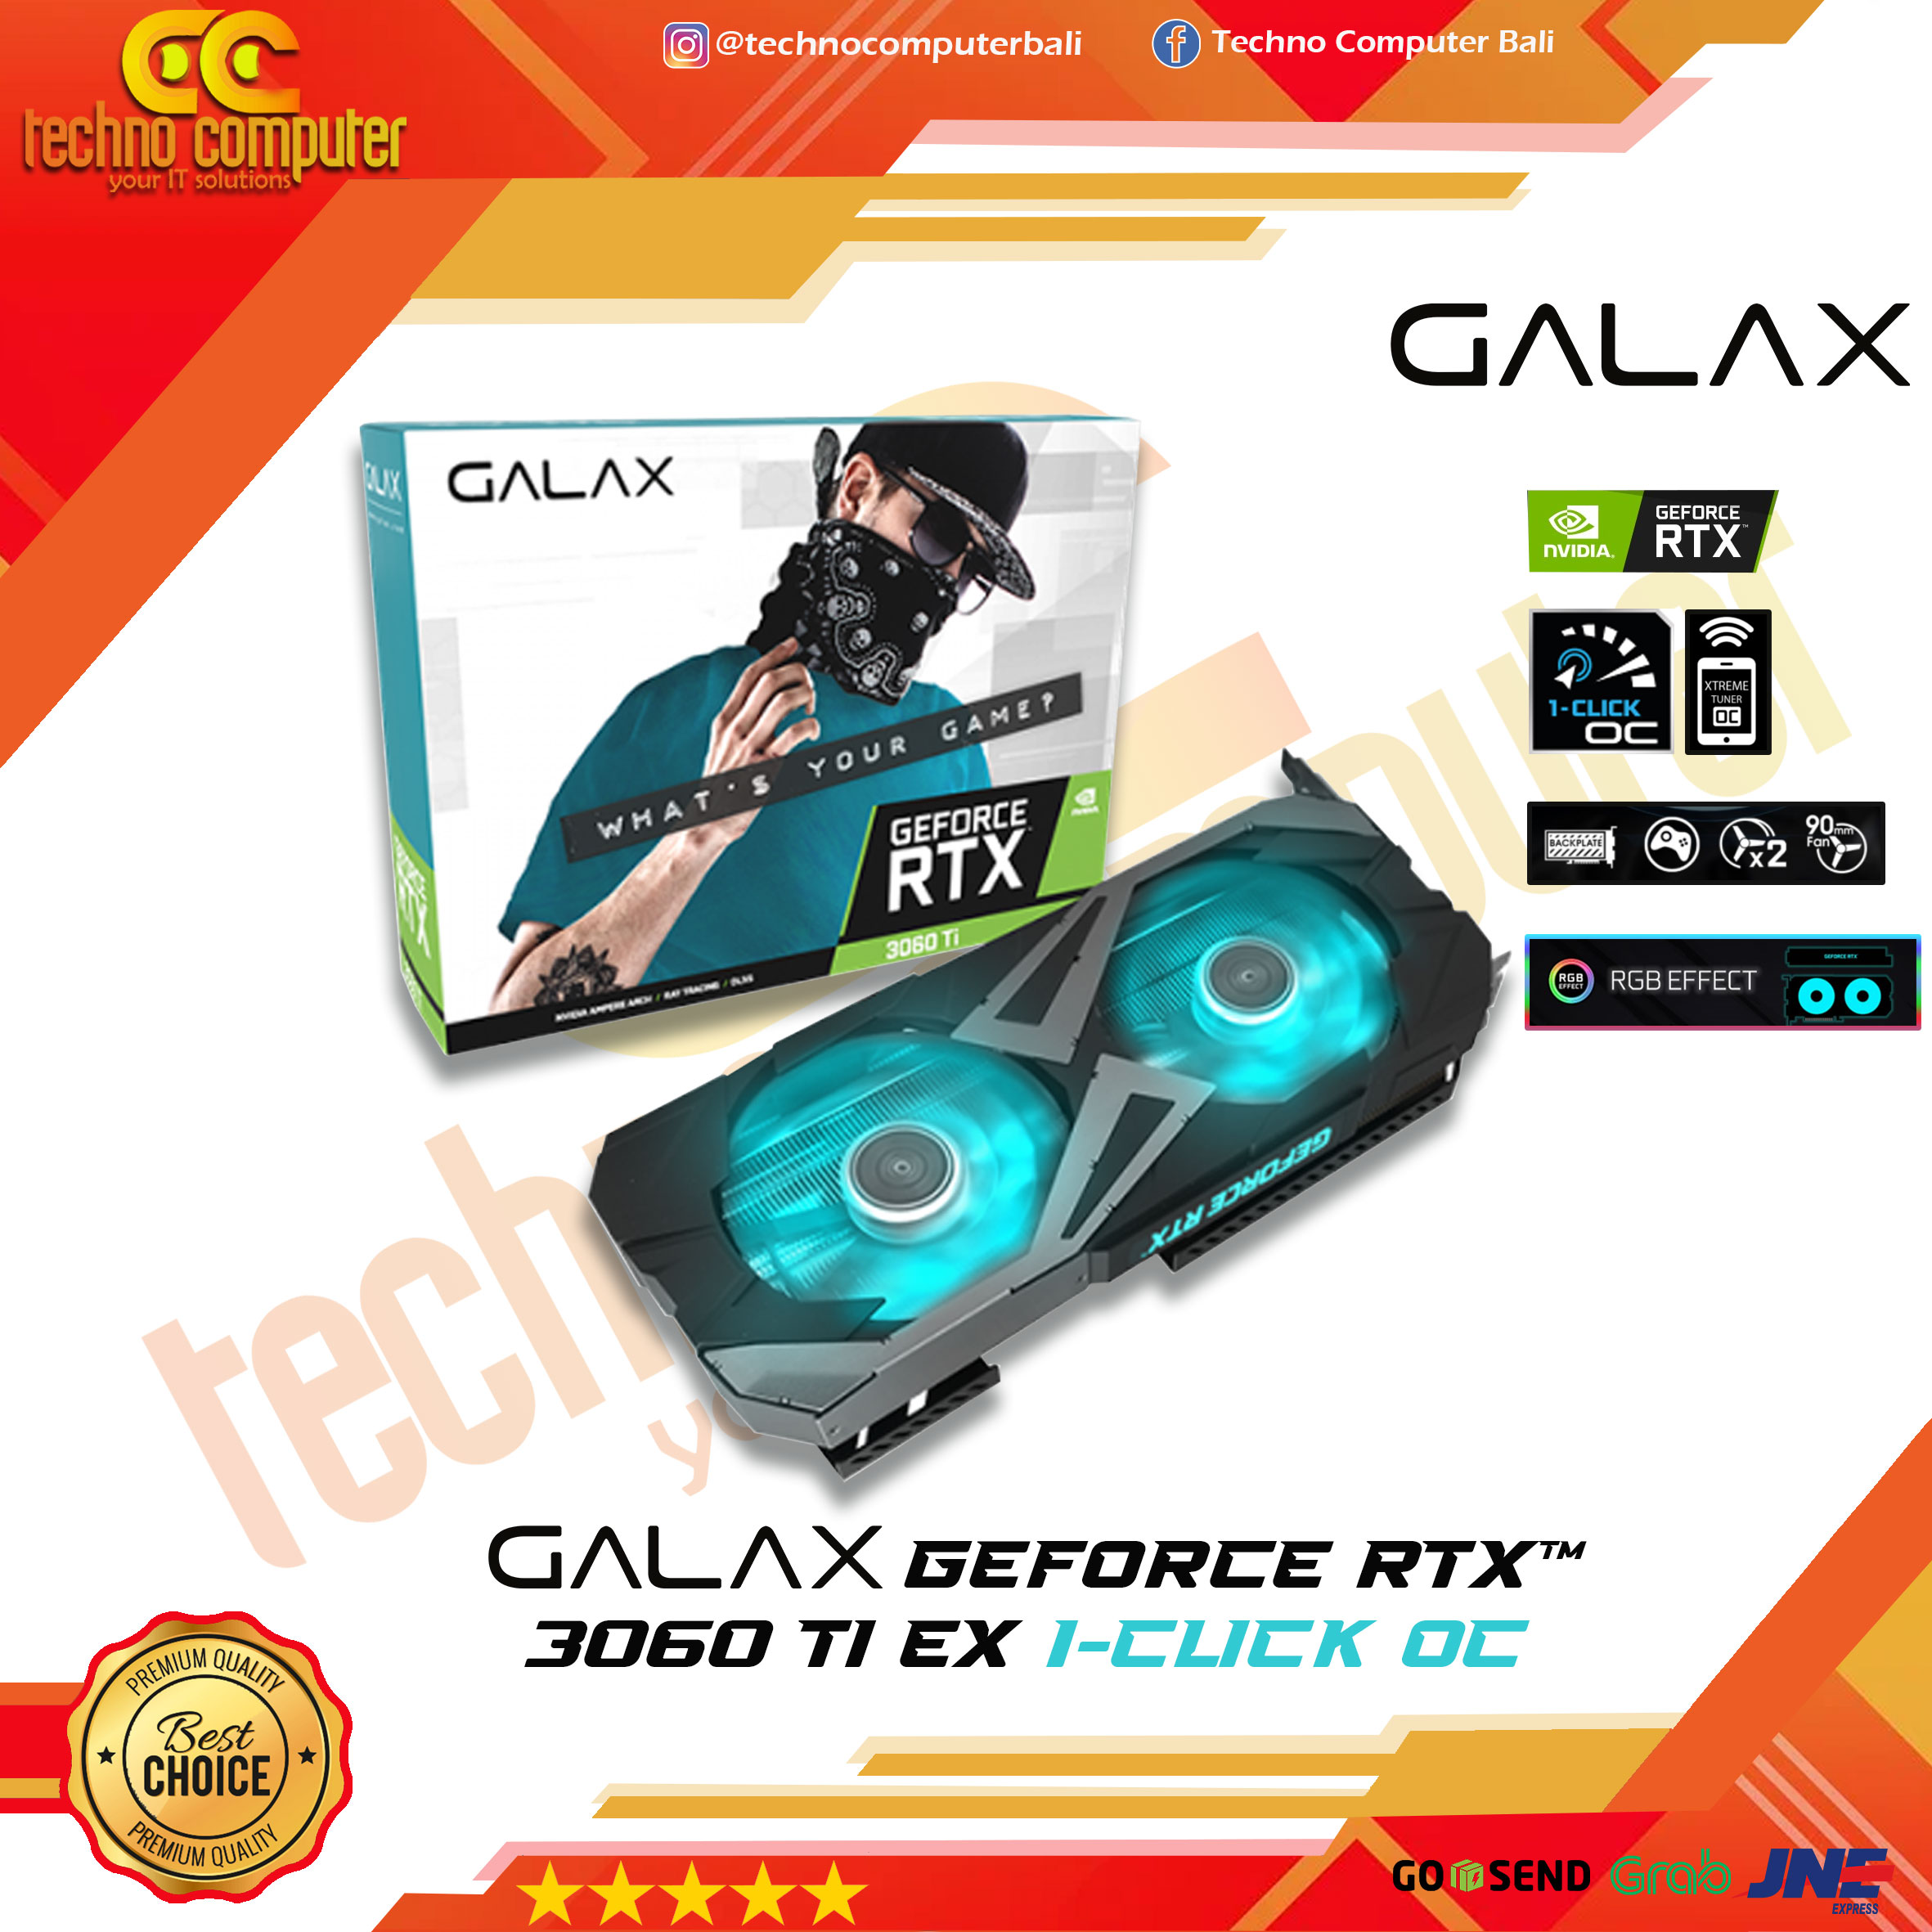 GALAX NVIDIA GeForce RTX 3060 Ti EX (1-Click OC) 8GB DDR6X - Dual Fan